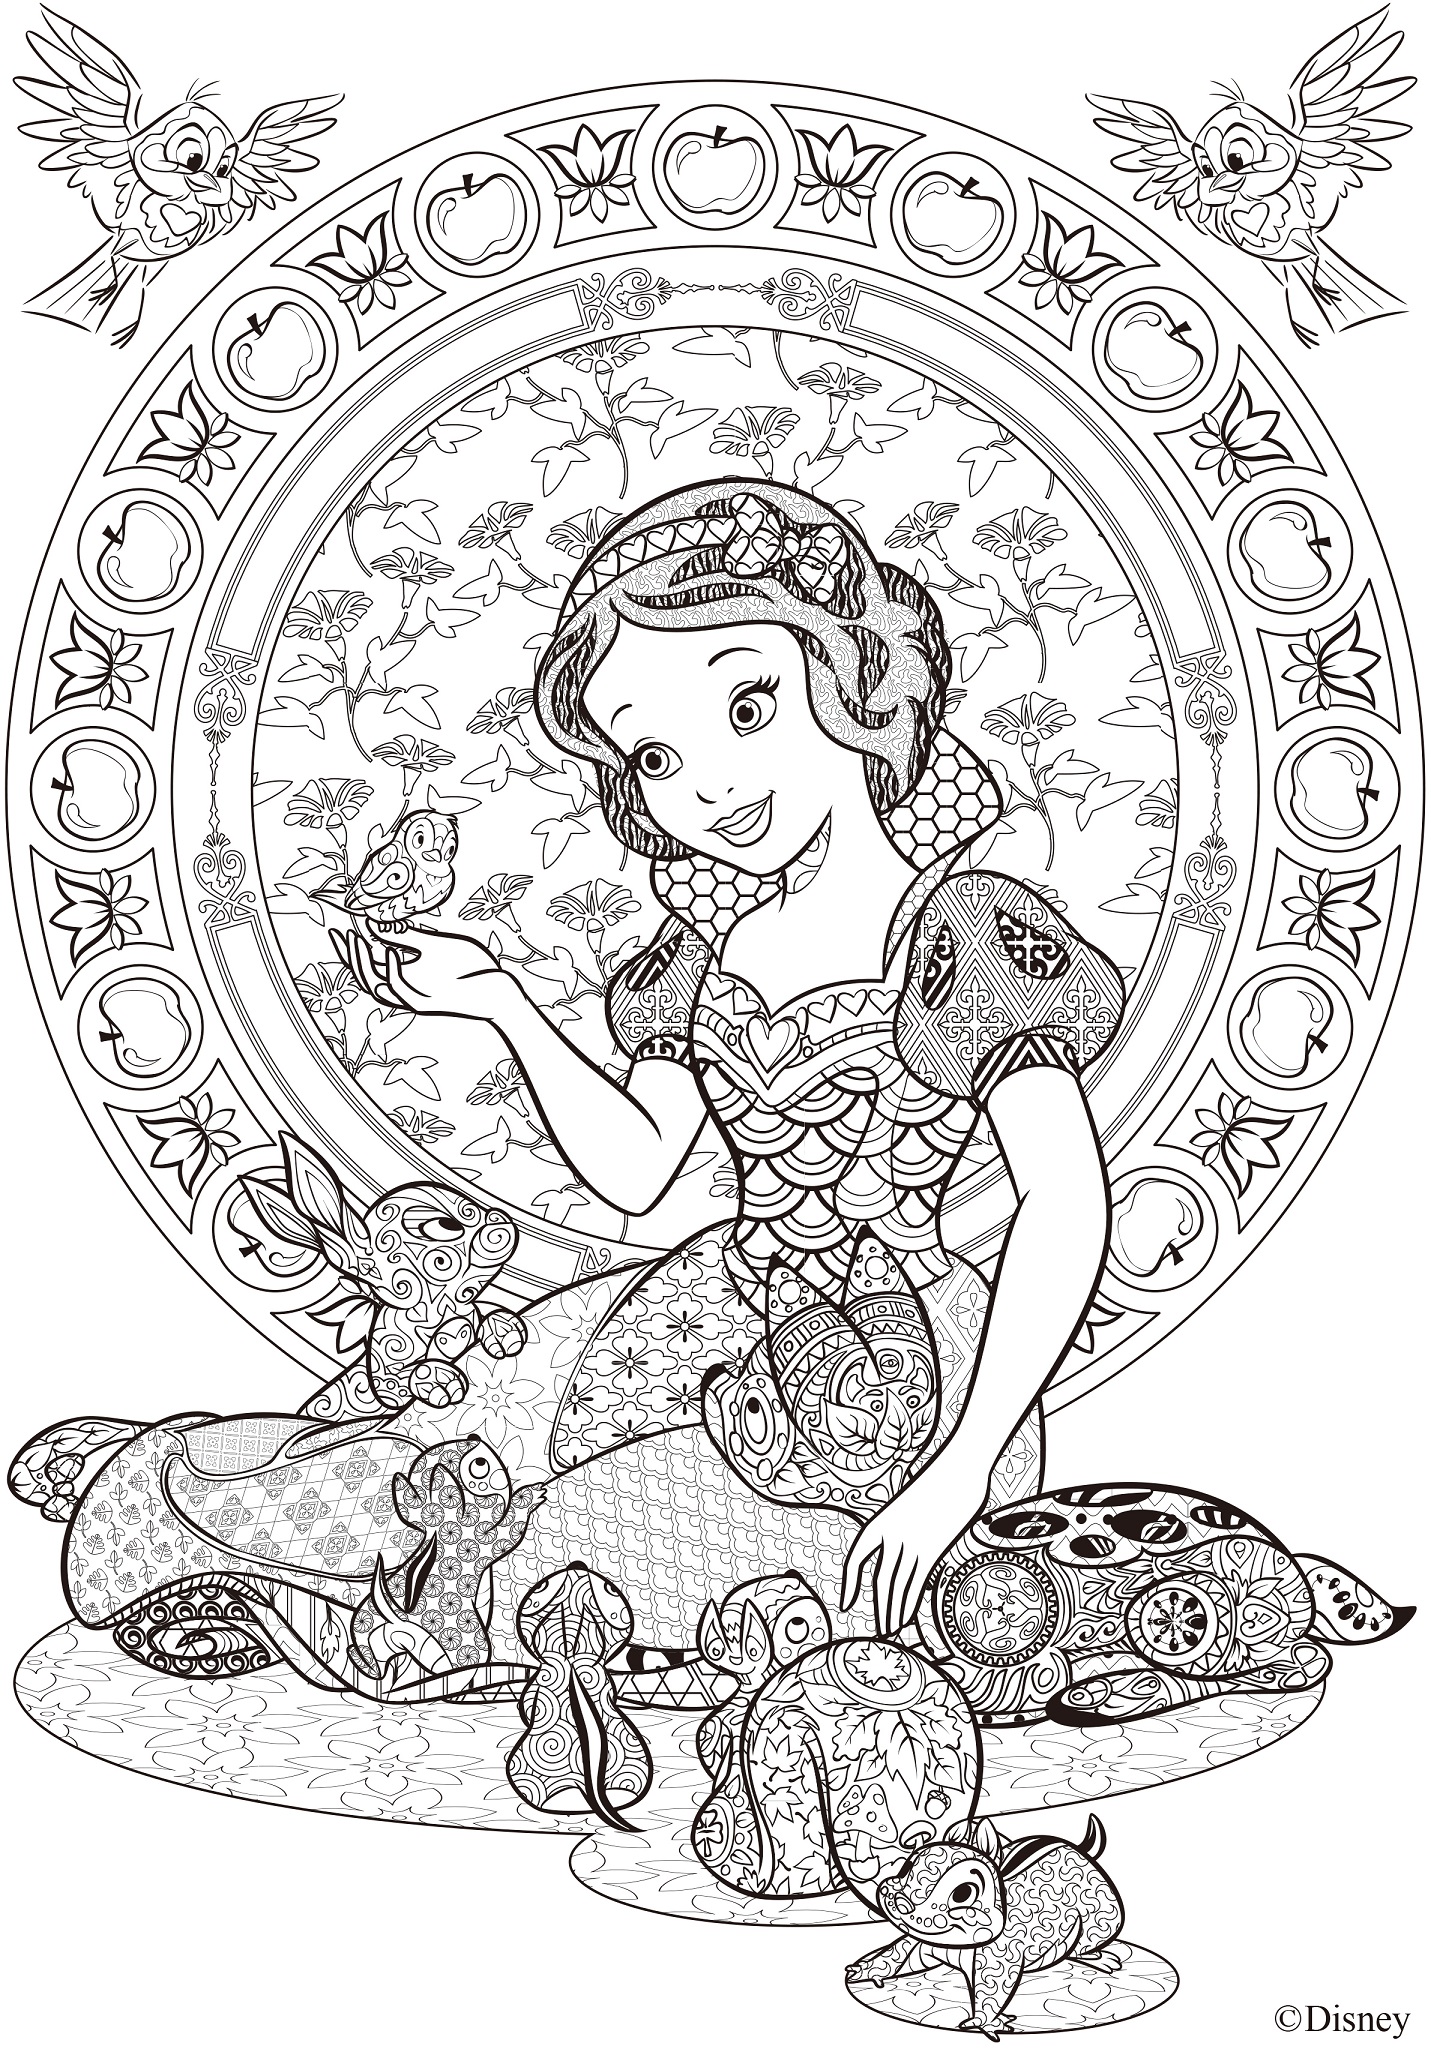 ディズニーのアニマルキャラが 大人のぬり絵 になったよ タングル模様の 白雪姫 や ふしぎの国のアリス で瞑想体験 16年8月15日 エキサイトニュース